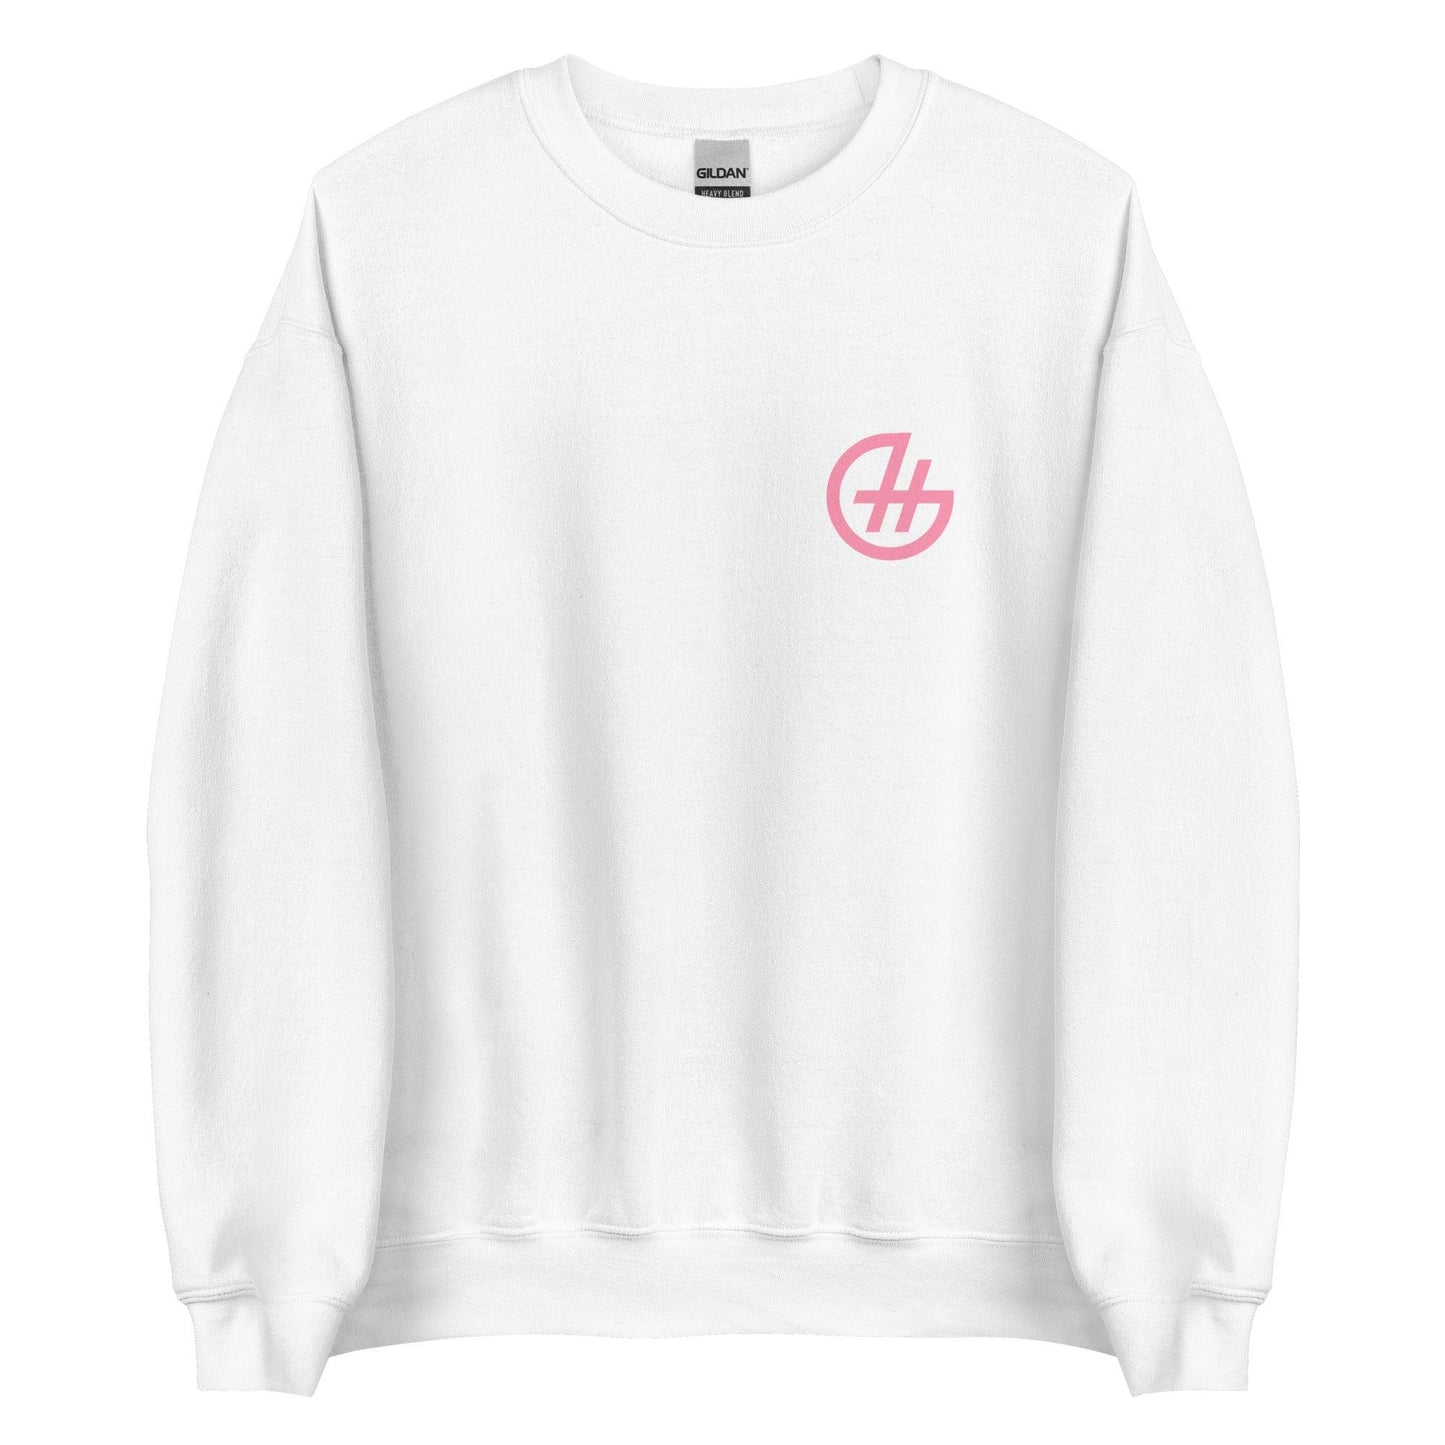 Hannah Gusters "The Brand" Sweatshirt - Fan Arch